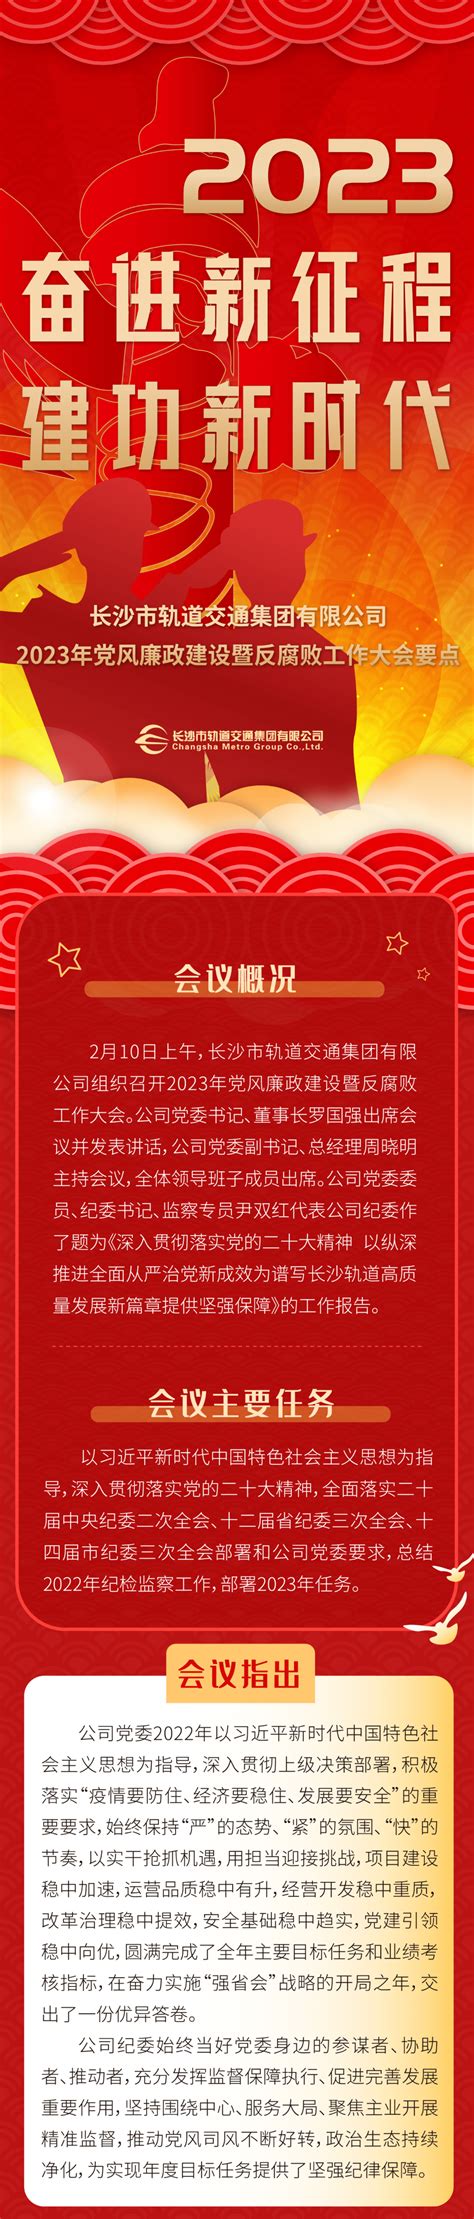 最新党风廉政建设展板设计图片__编号4622534_红动中国